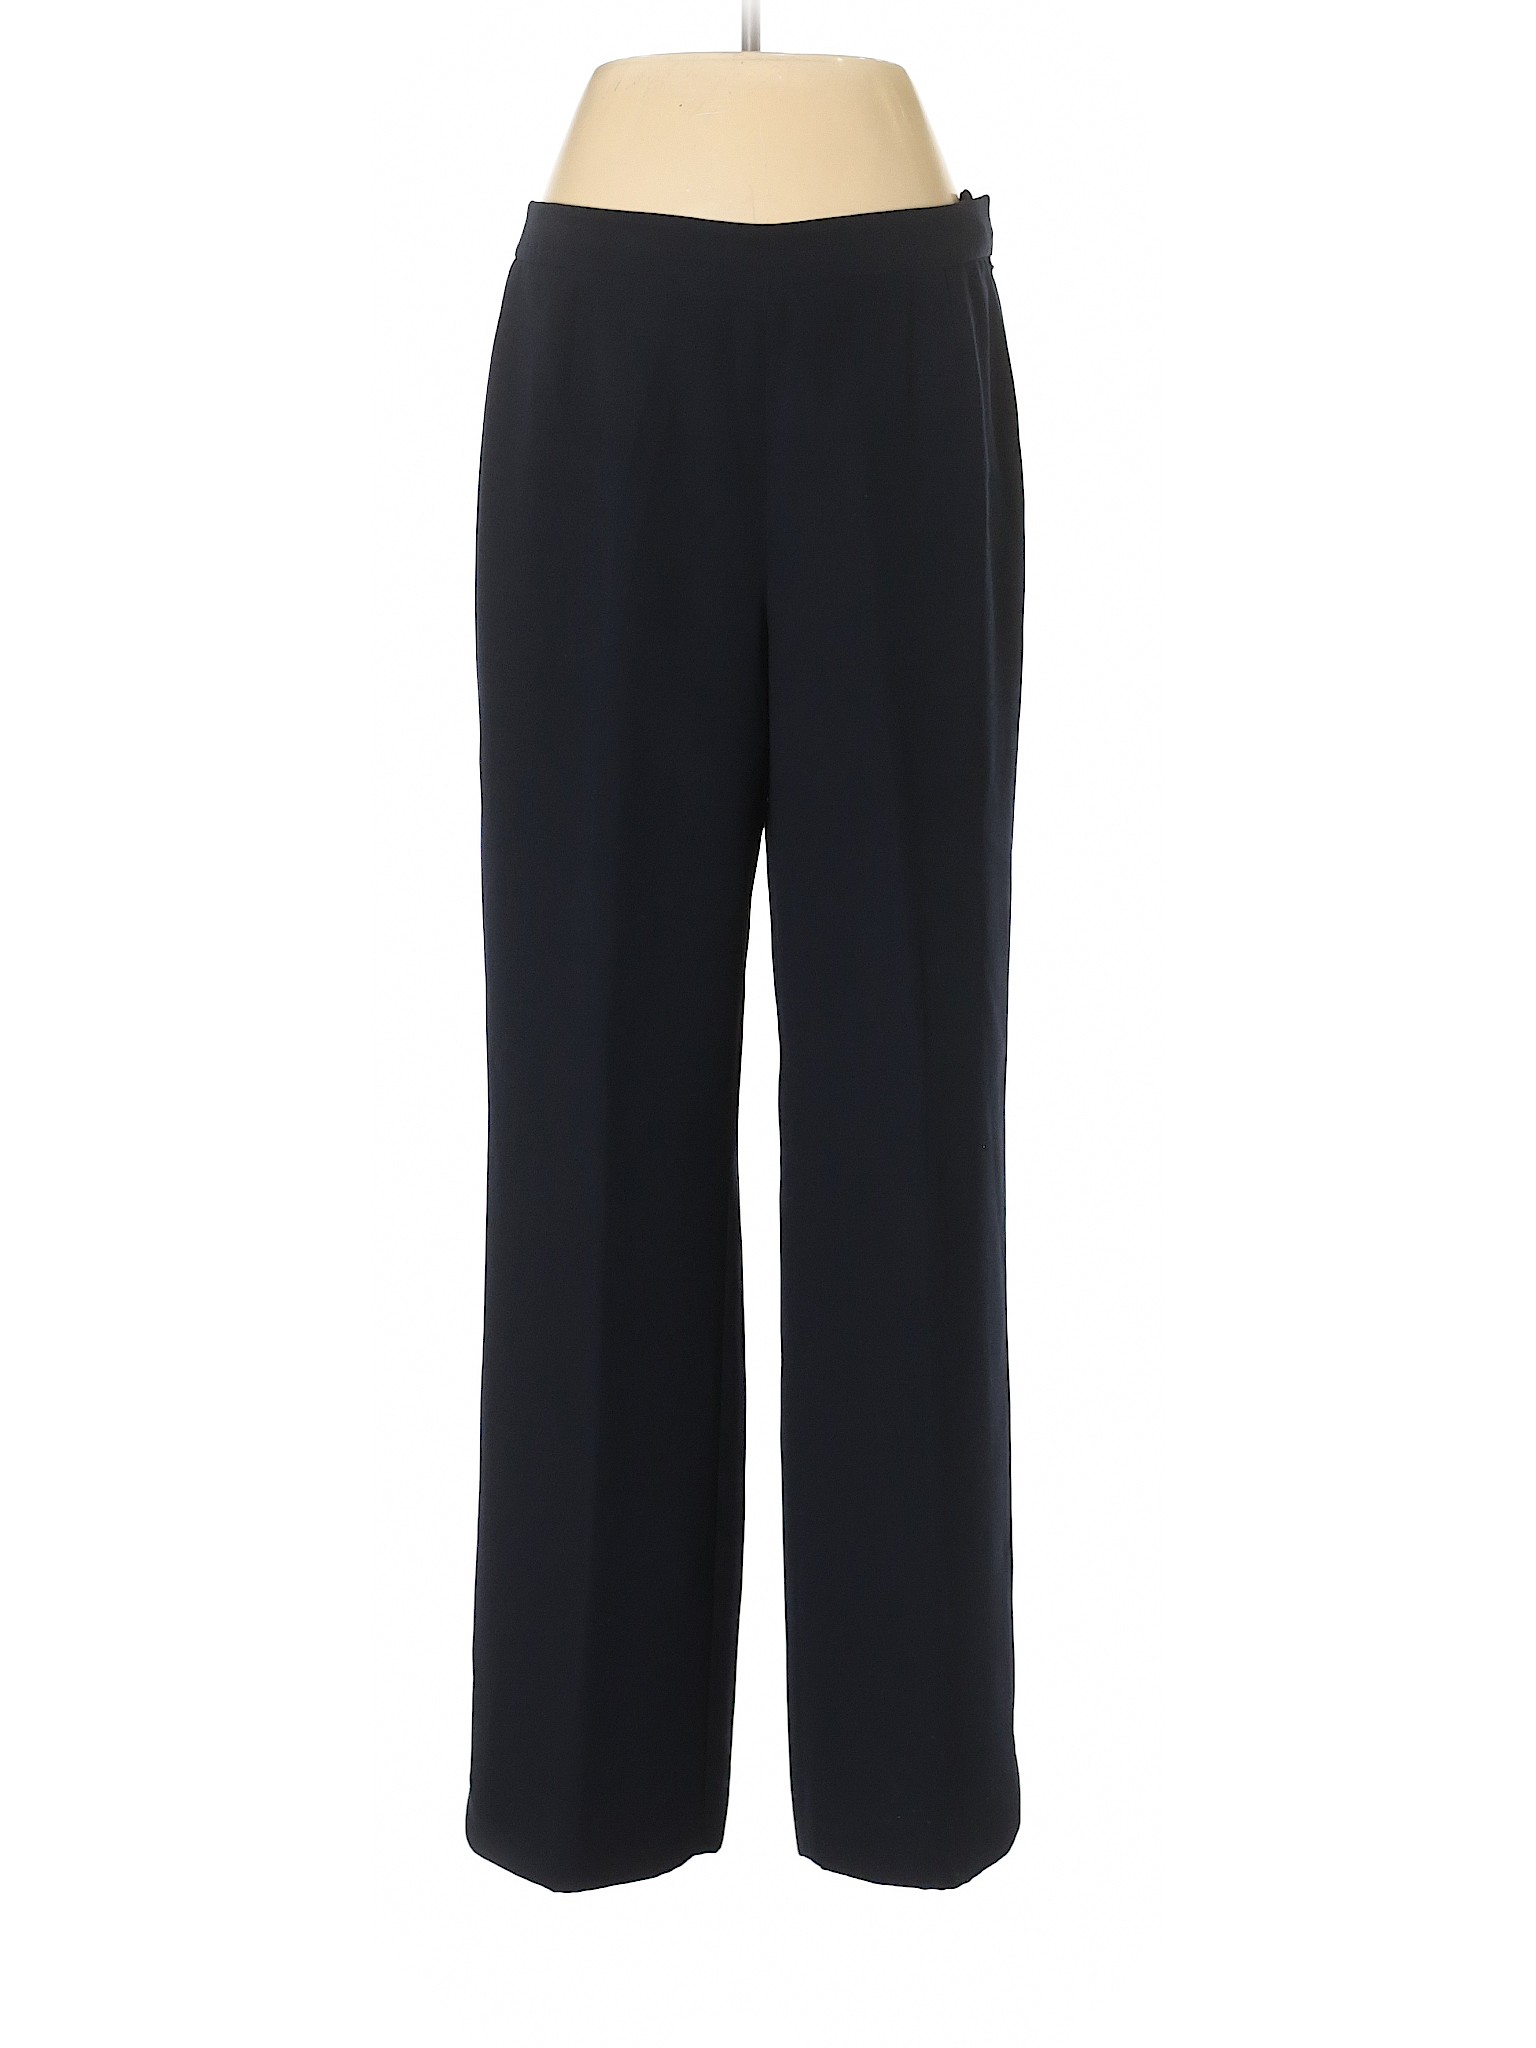 Jones Studio Women Black Dress Pants 8 | eBay